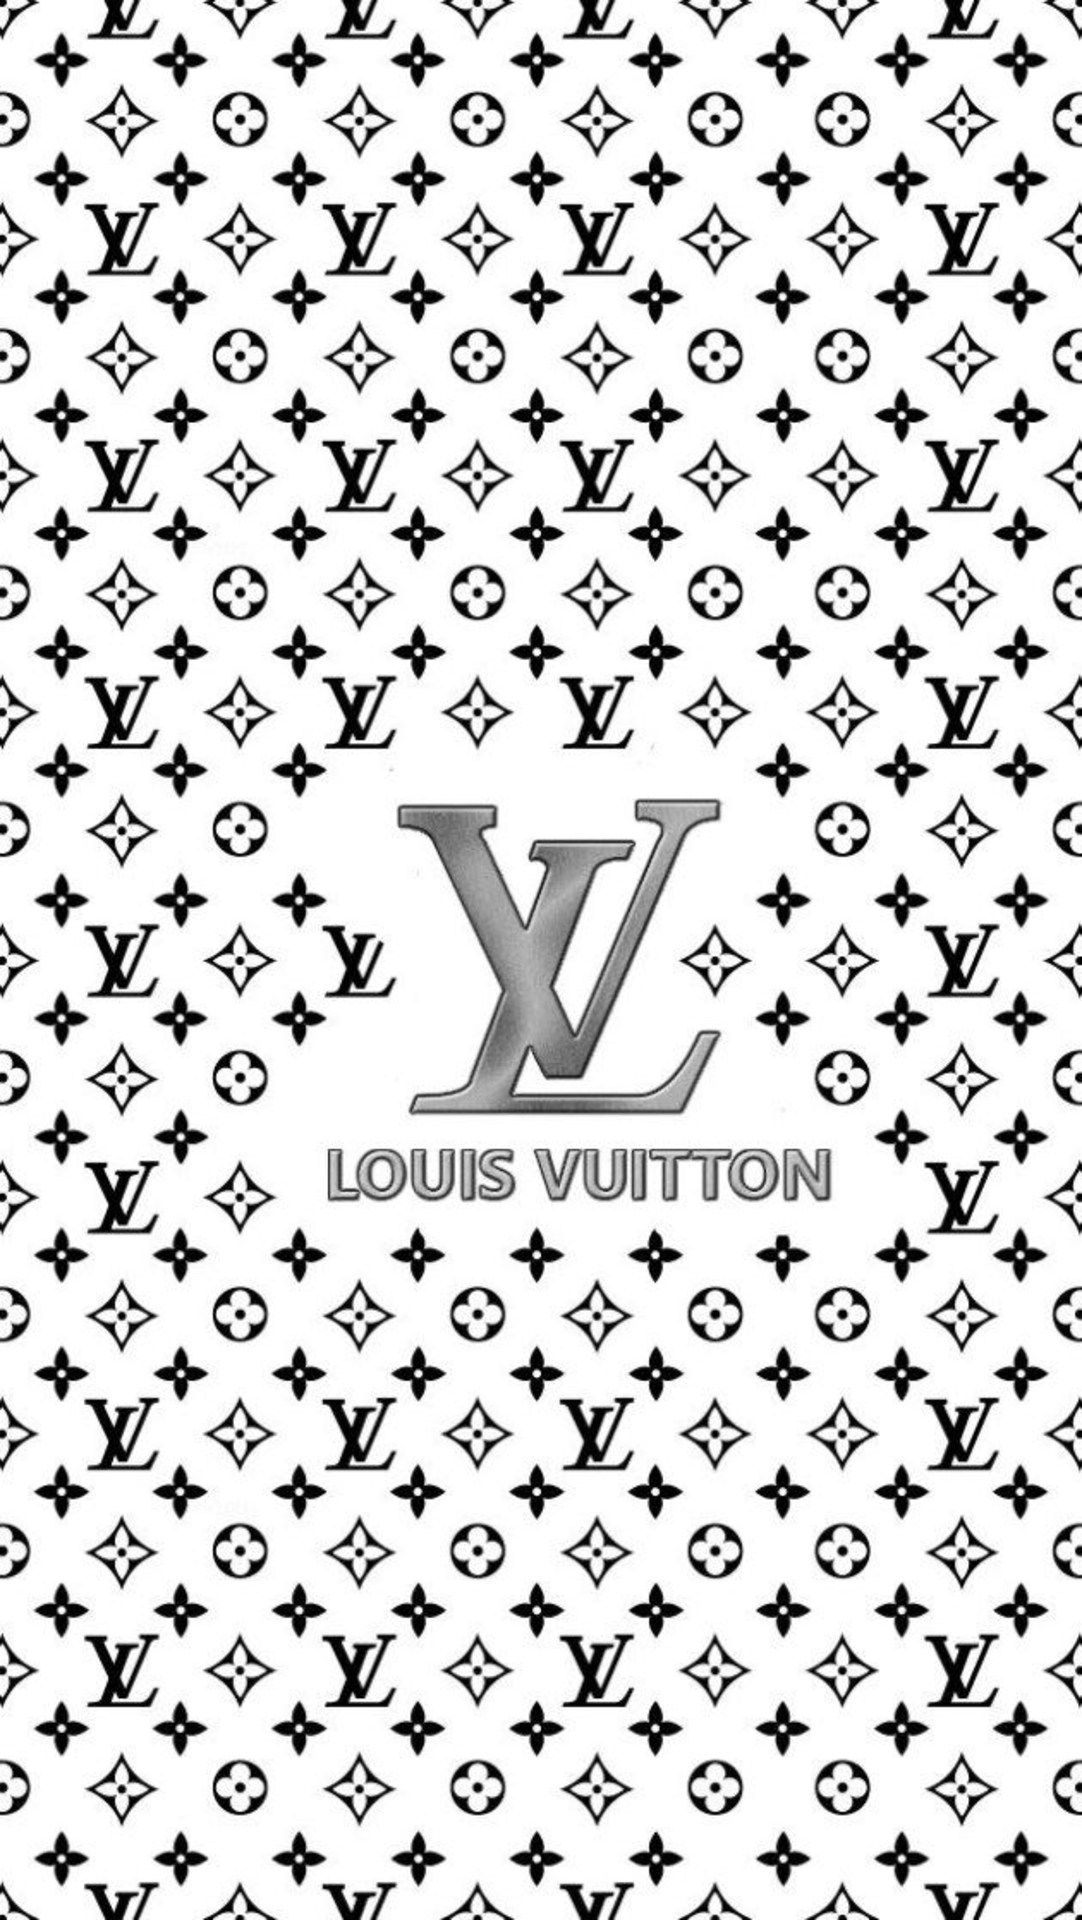 Off-White x Louis Vuitton wallpaper 16:9  Sfondi per iphone, Sfondi  iphone, Wallpaper per telefono